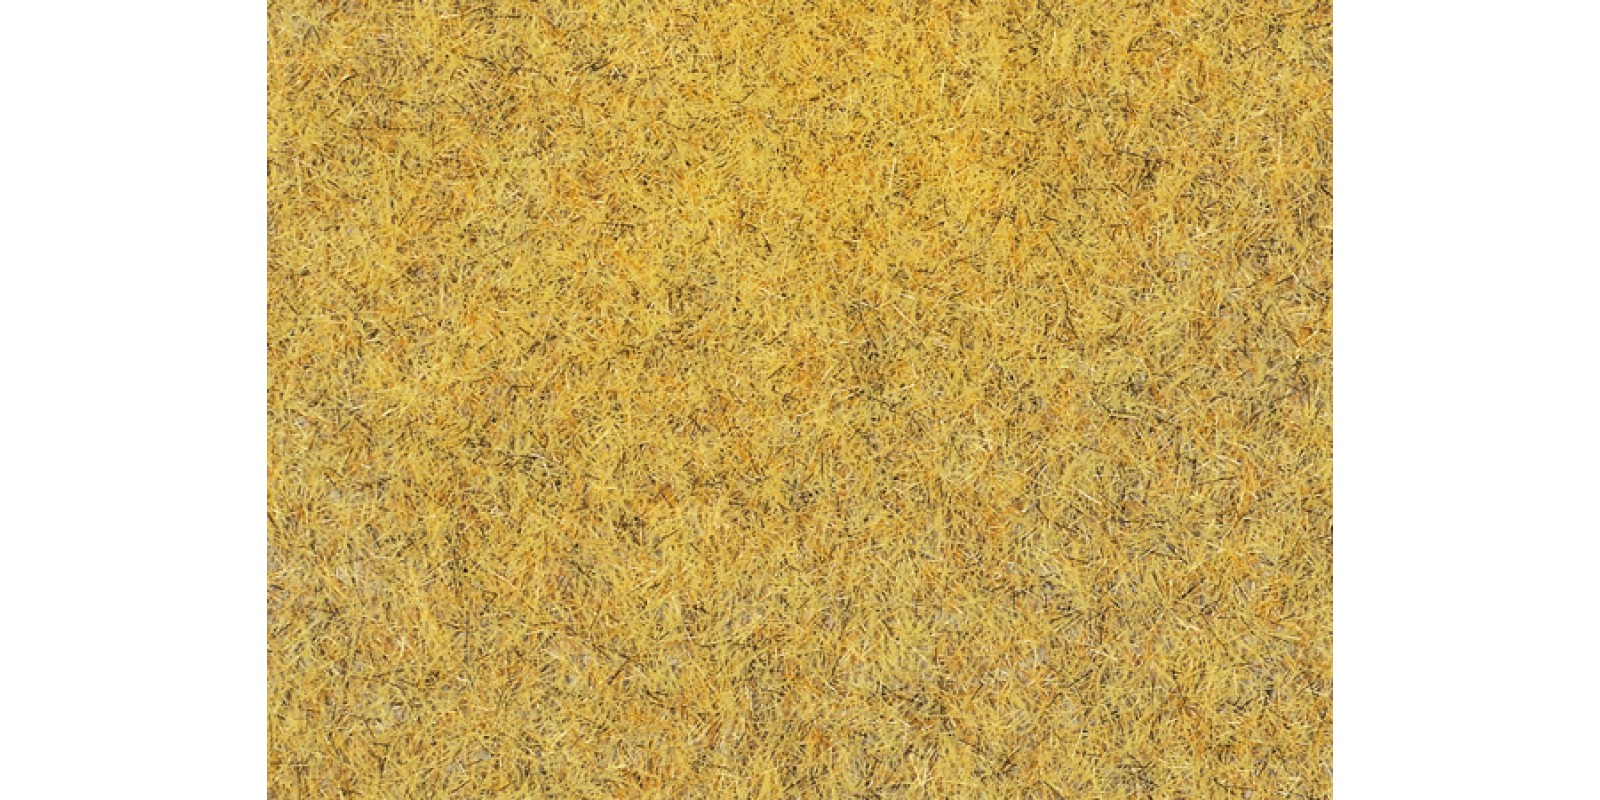 AU75111 Corn field mat 35 x 50 cm